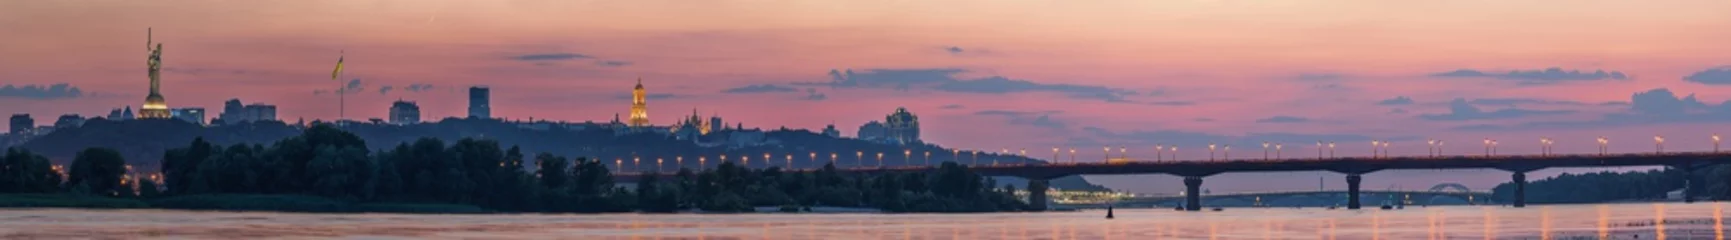 Draagtas Uitzicht op Kiev Pechersk Lavra, Motherland Monument, Kiev bruggen en de rivier de Dnjepr, na zonsondergang wordt een dunne halve maan aan de oranje hemel gezien. © underwaterstas